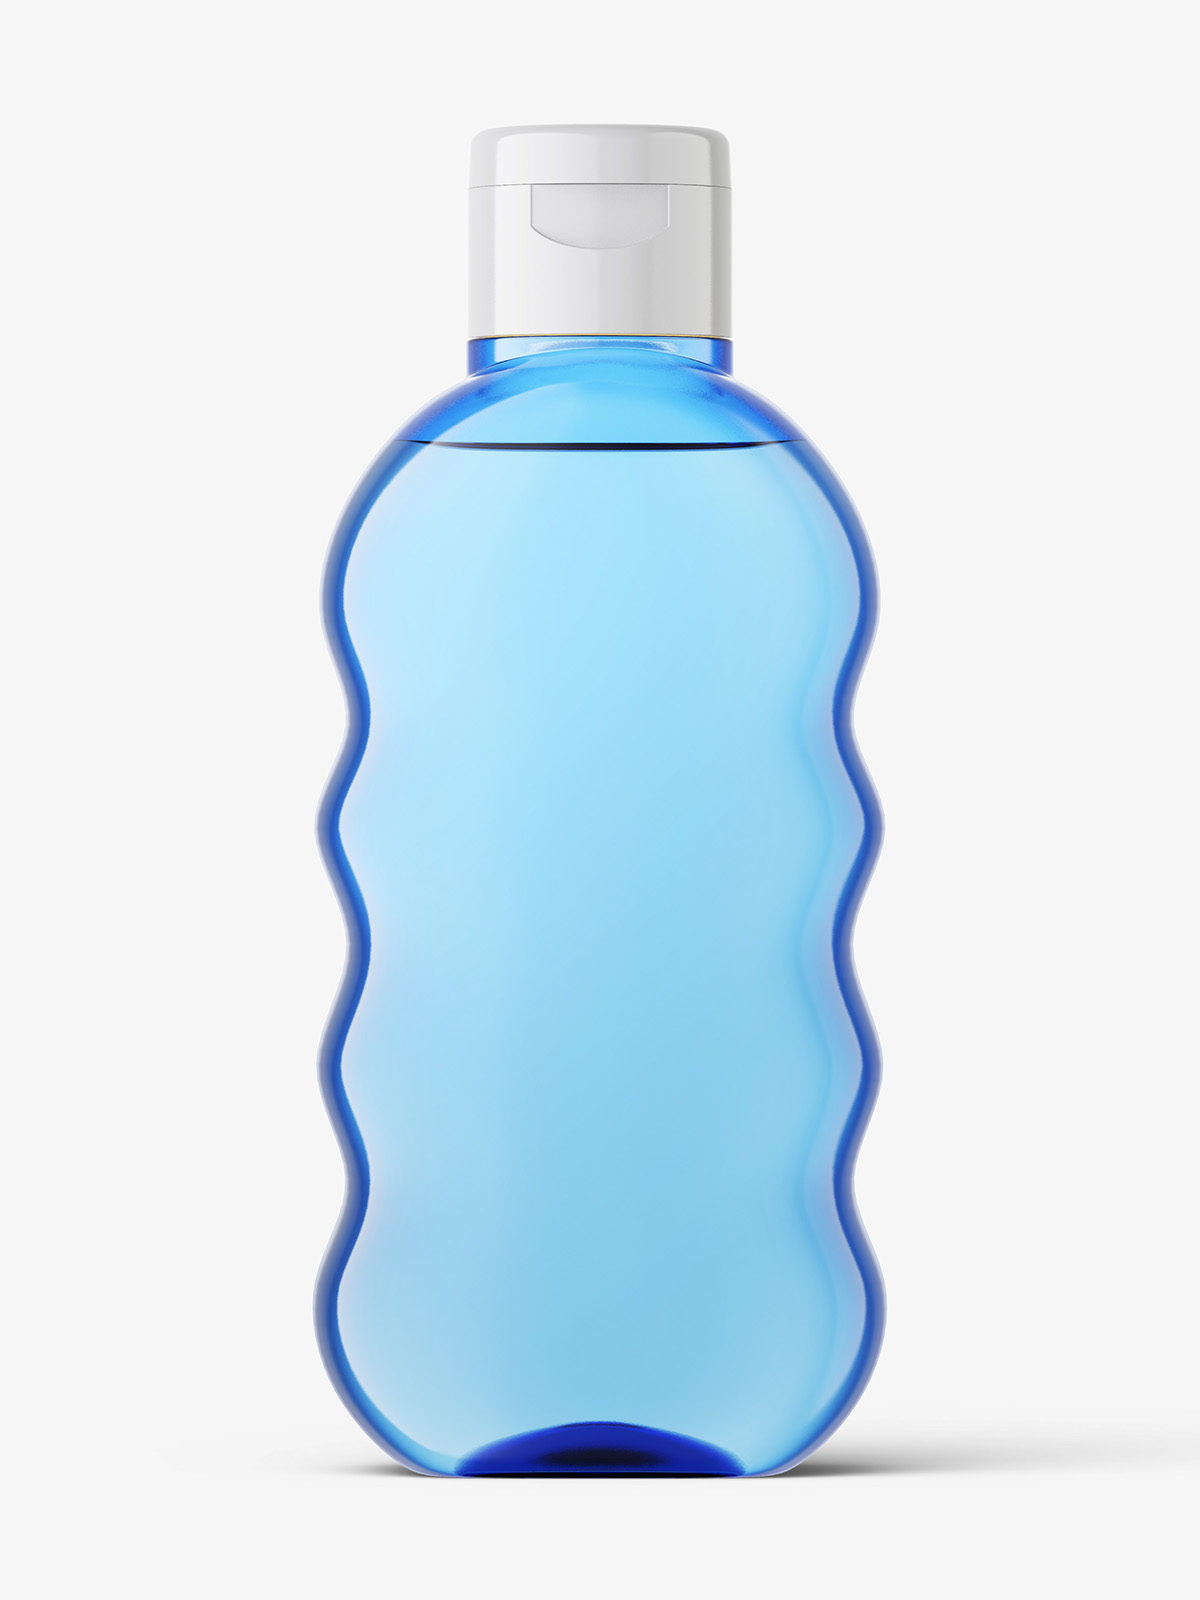 蓝色婴儿润肤油瓶PSD样机模型Bottle Mockup